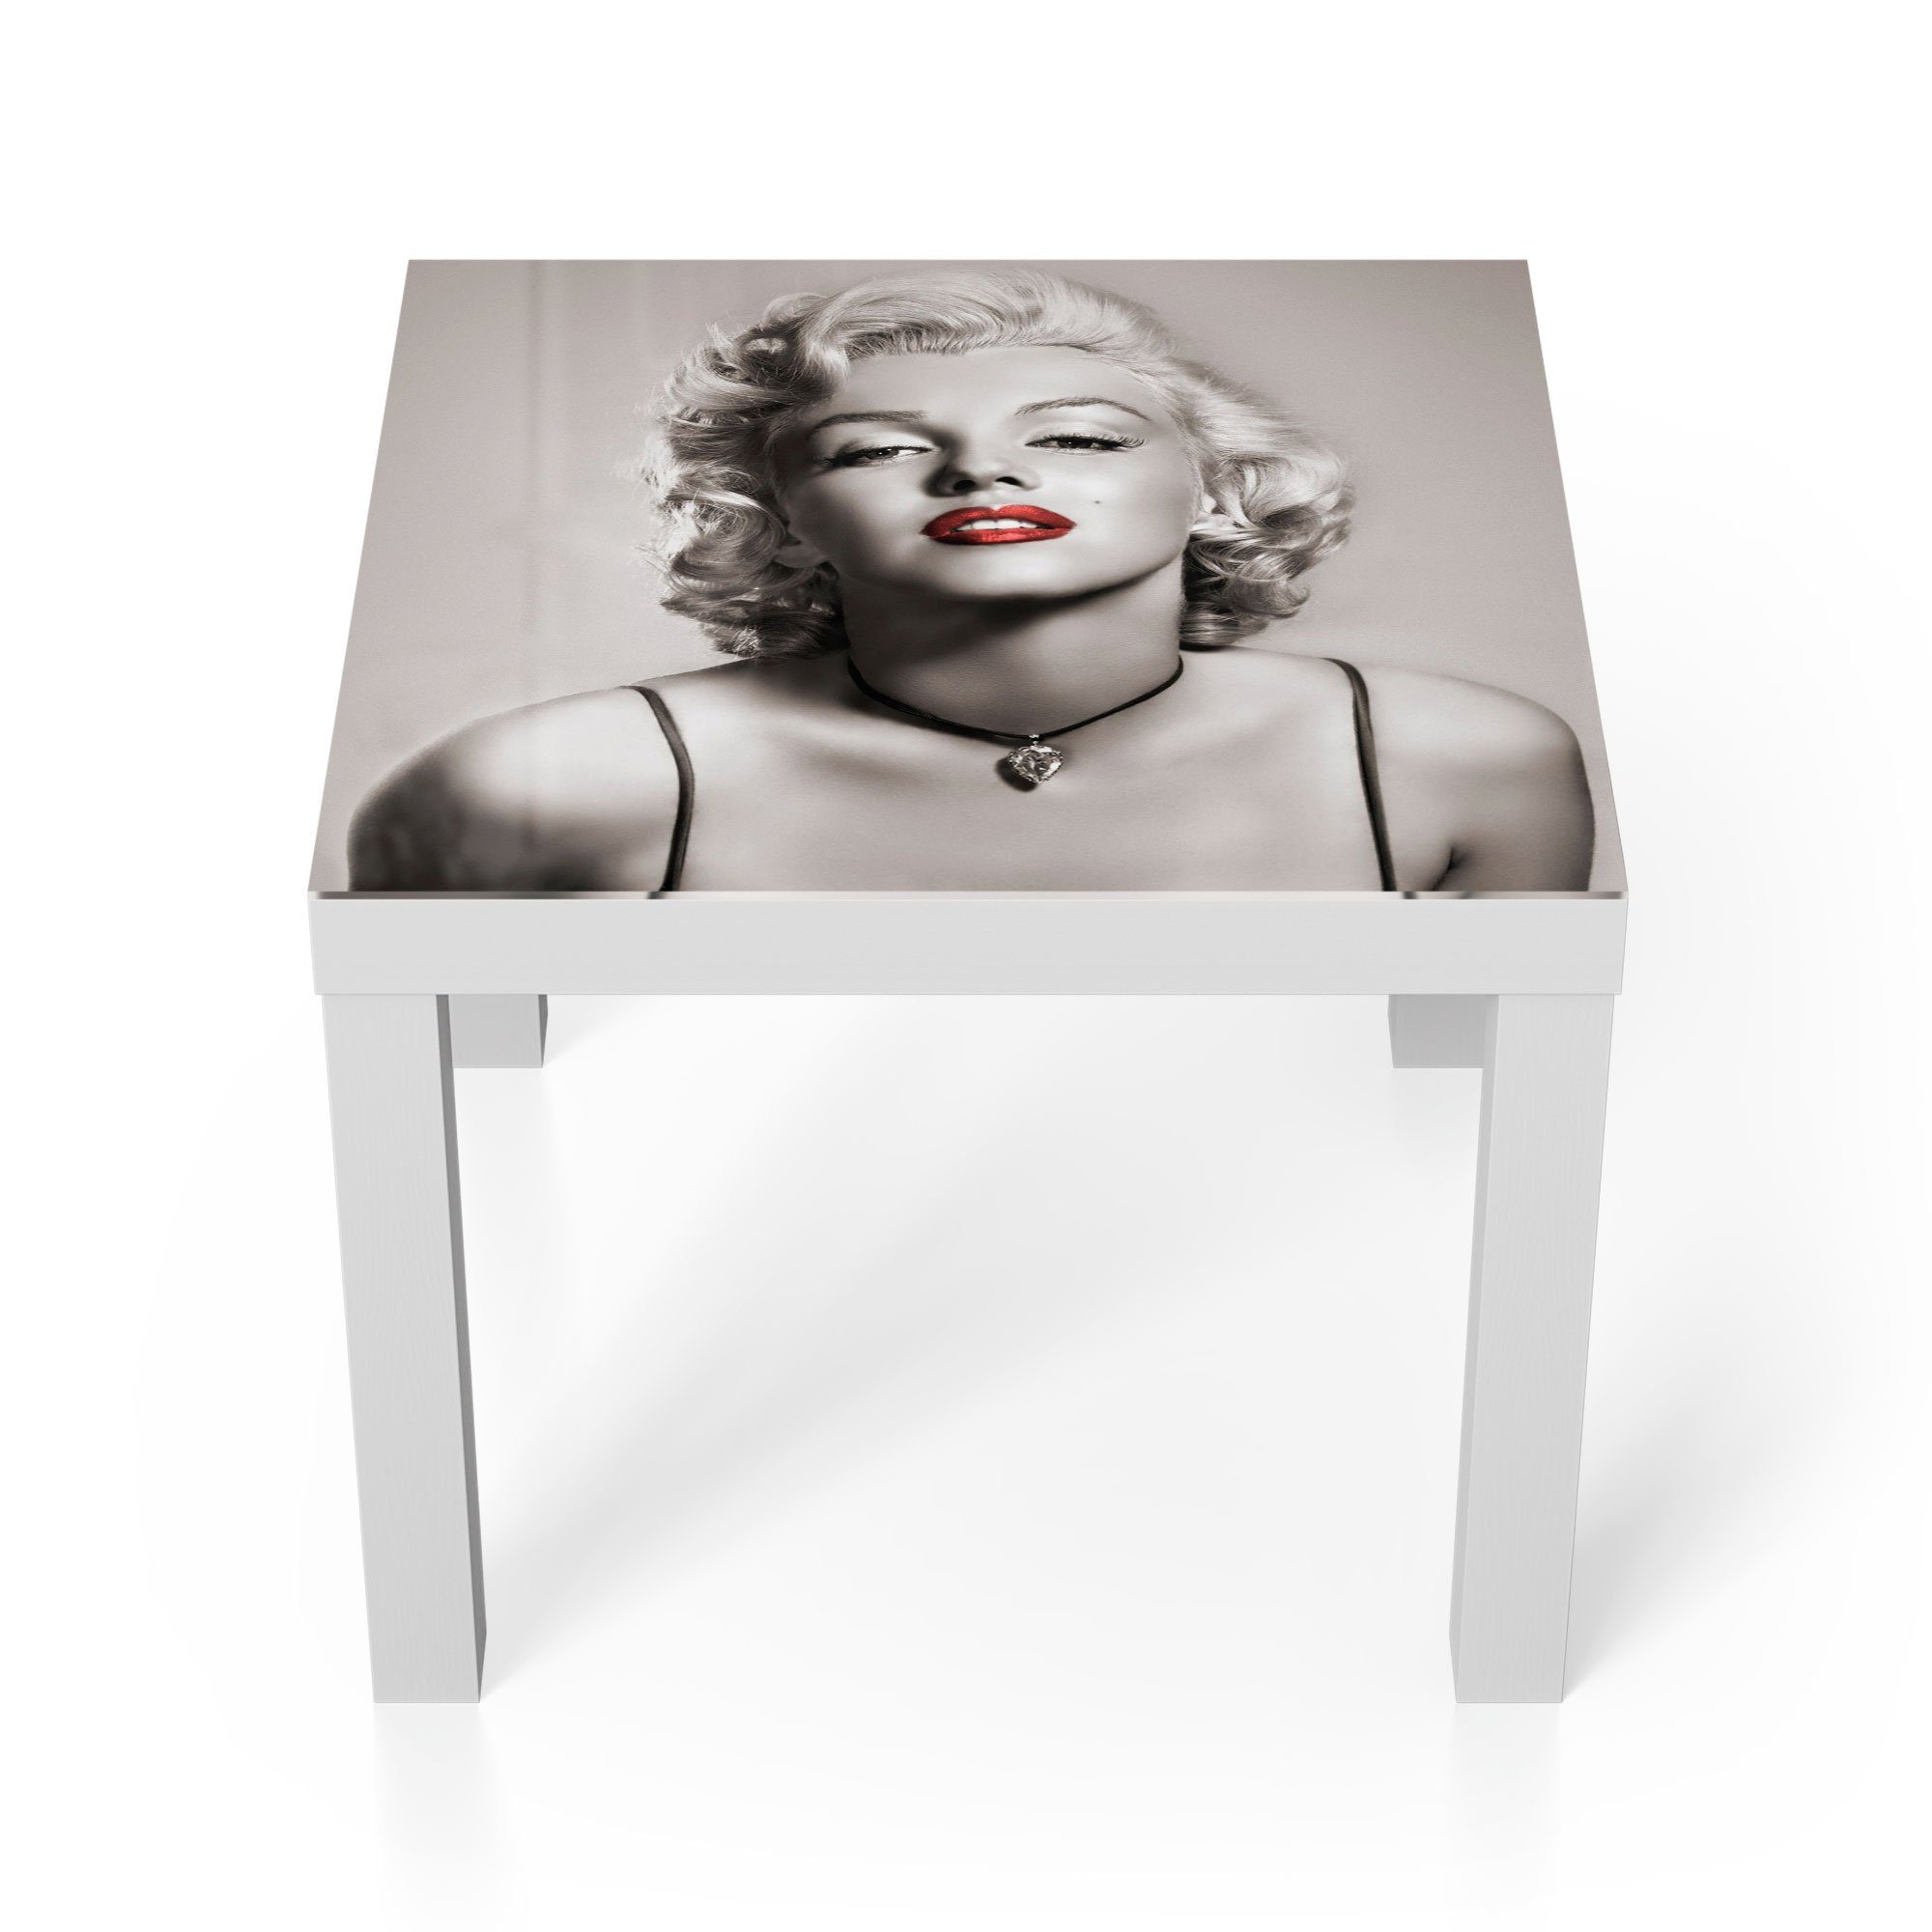 DEQORI Couchtisch 'Elegante Marilyn Monroe', Glas Beistelltisch Glastisch modern Weiß